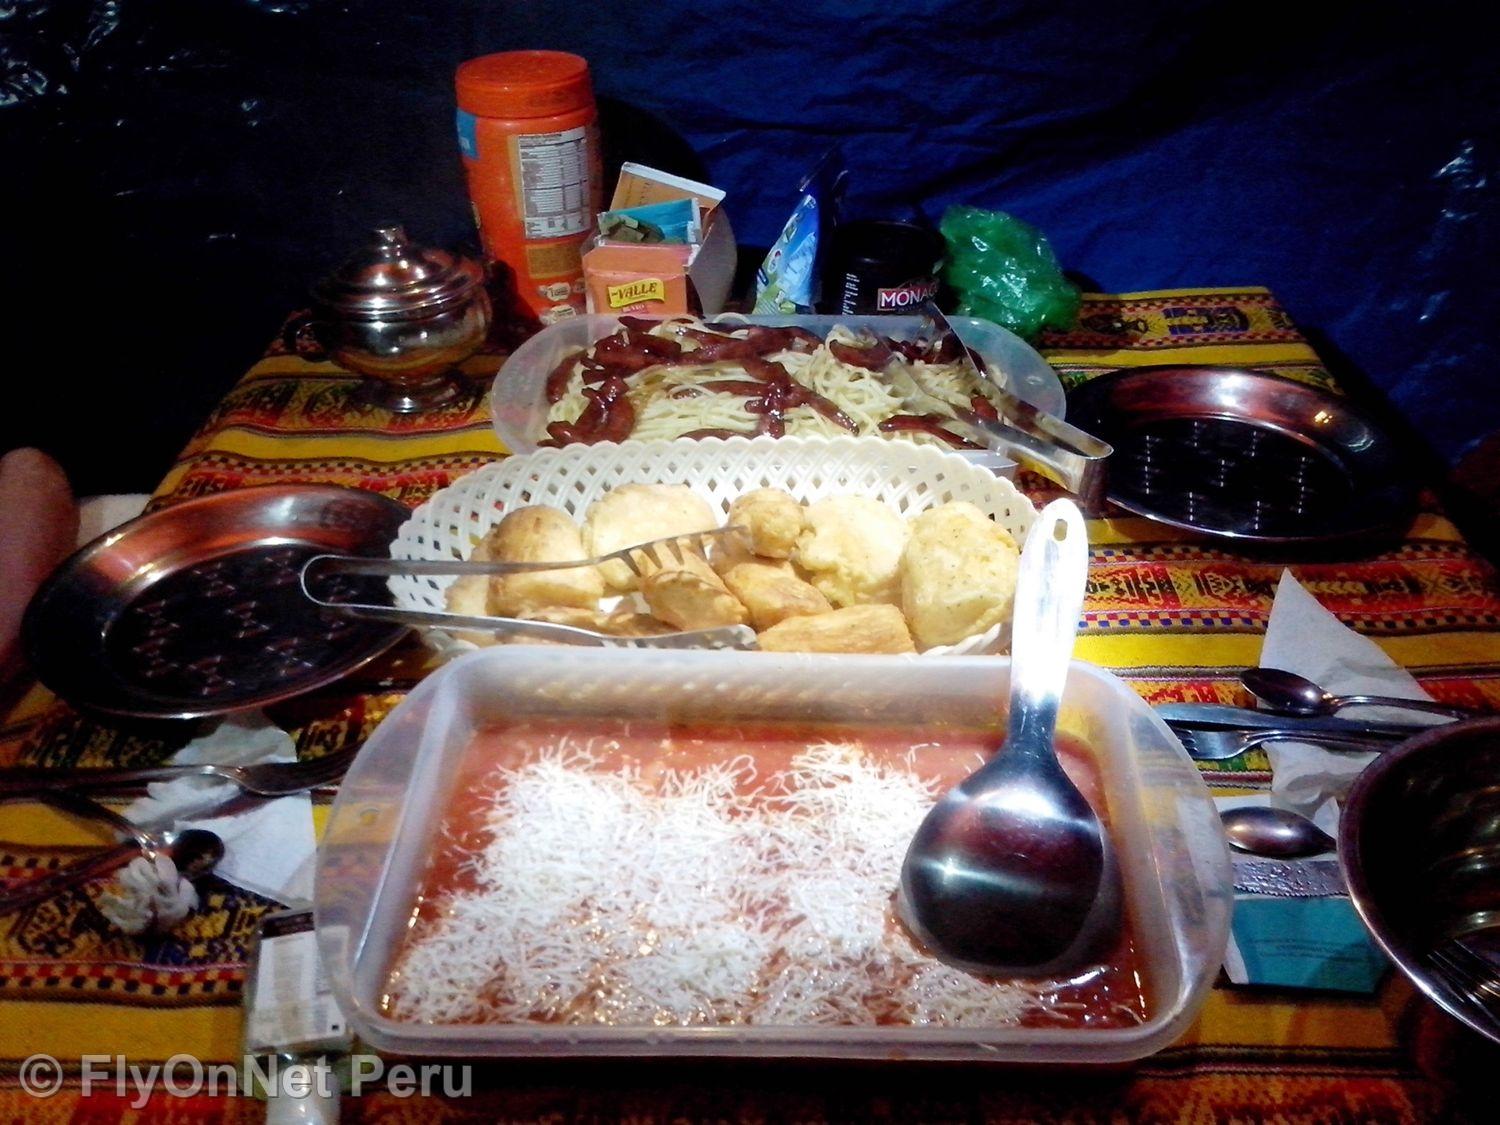 Photo Album: Meal during the trek, Inca Trail